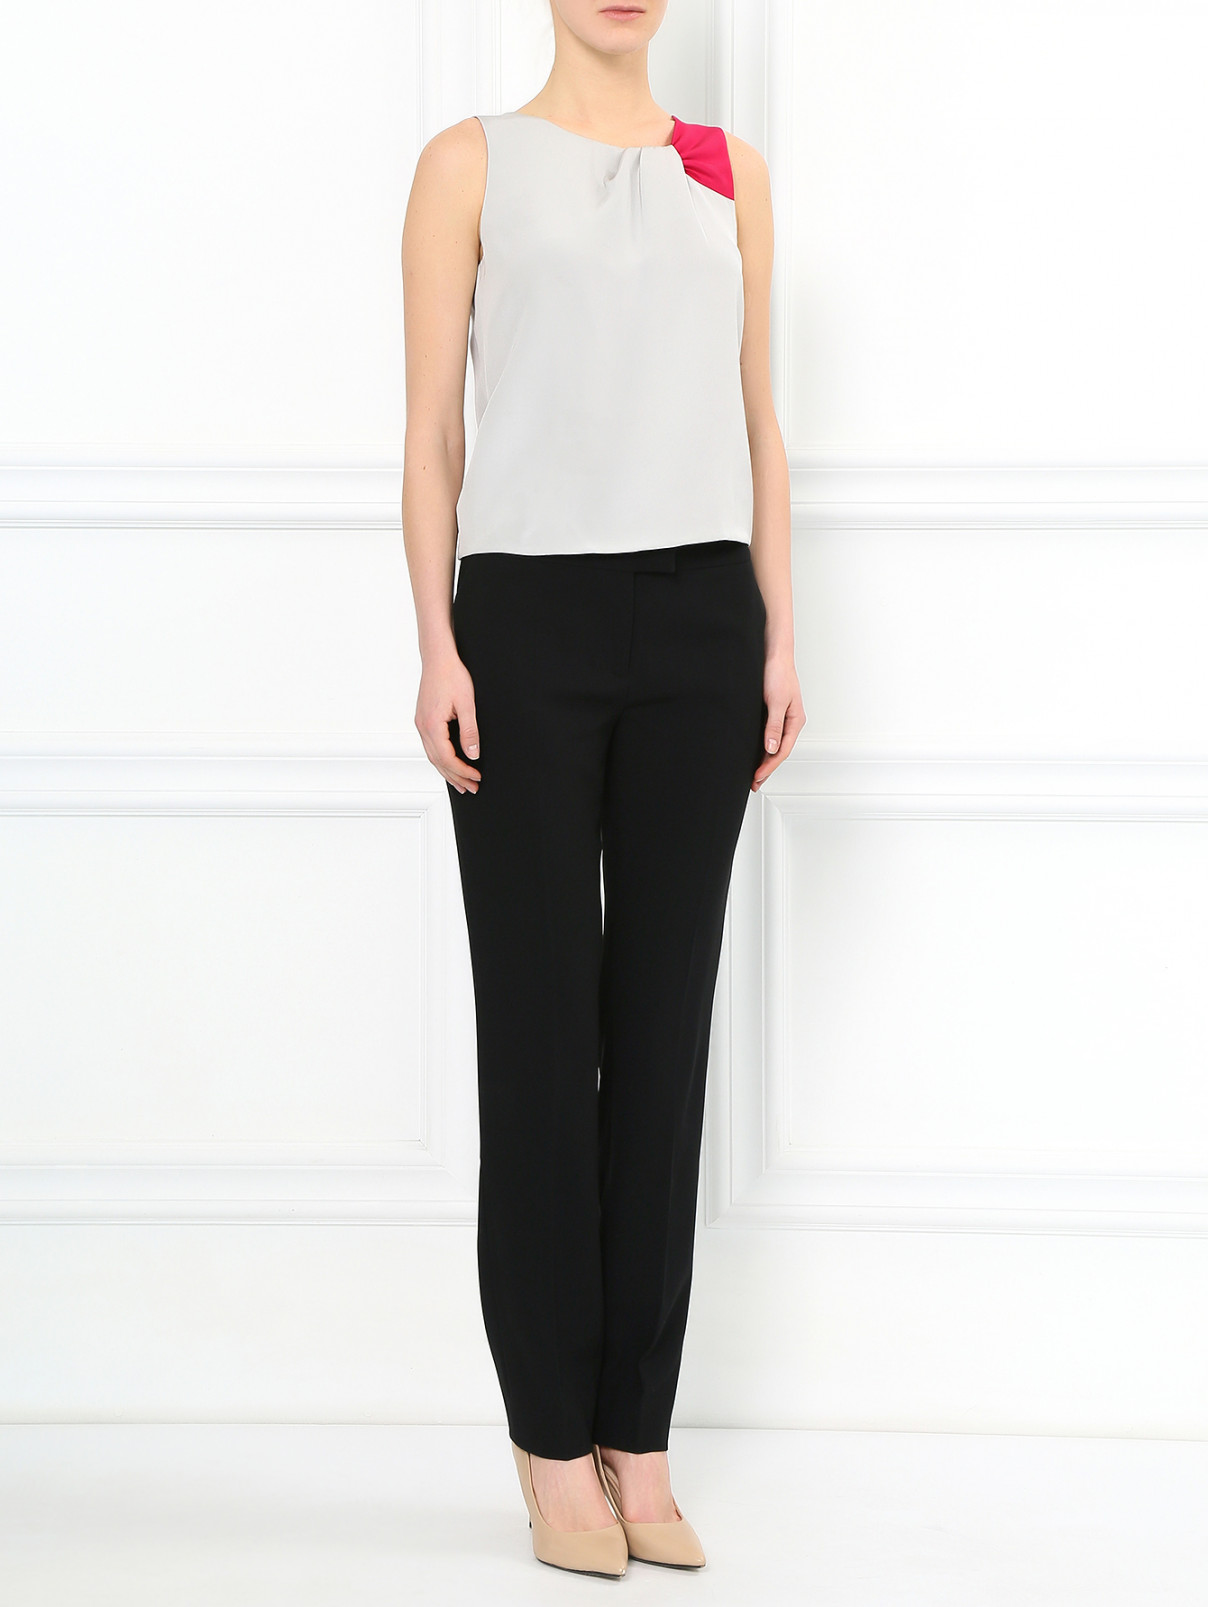 Узкие укороченные брюки Moschino  –  Модель Общий вид  – Цвет:  Черный